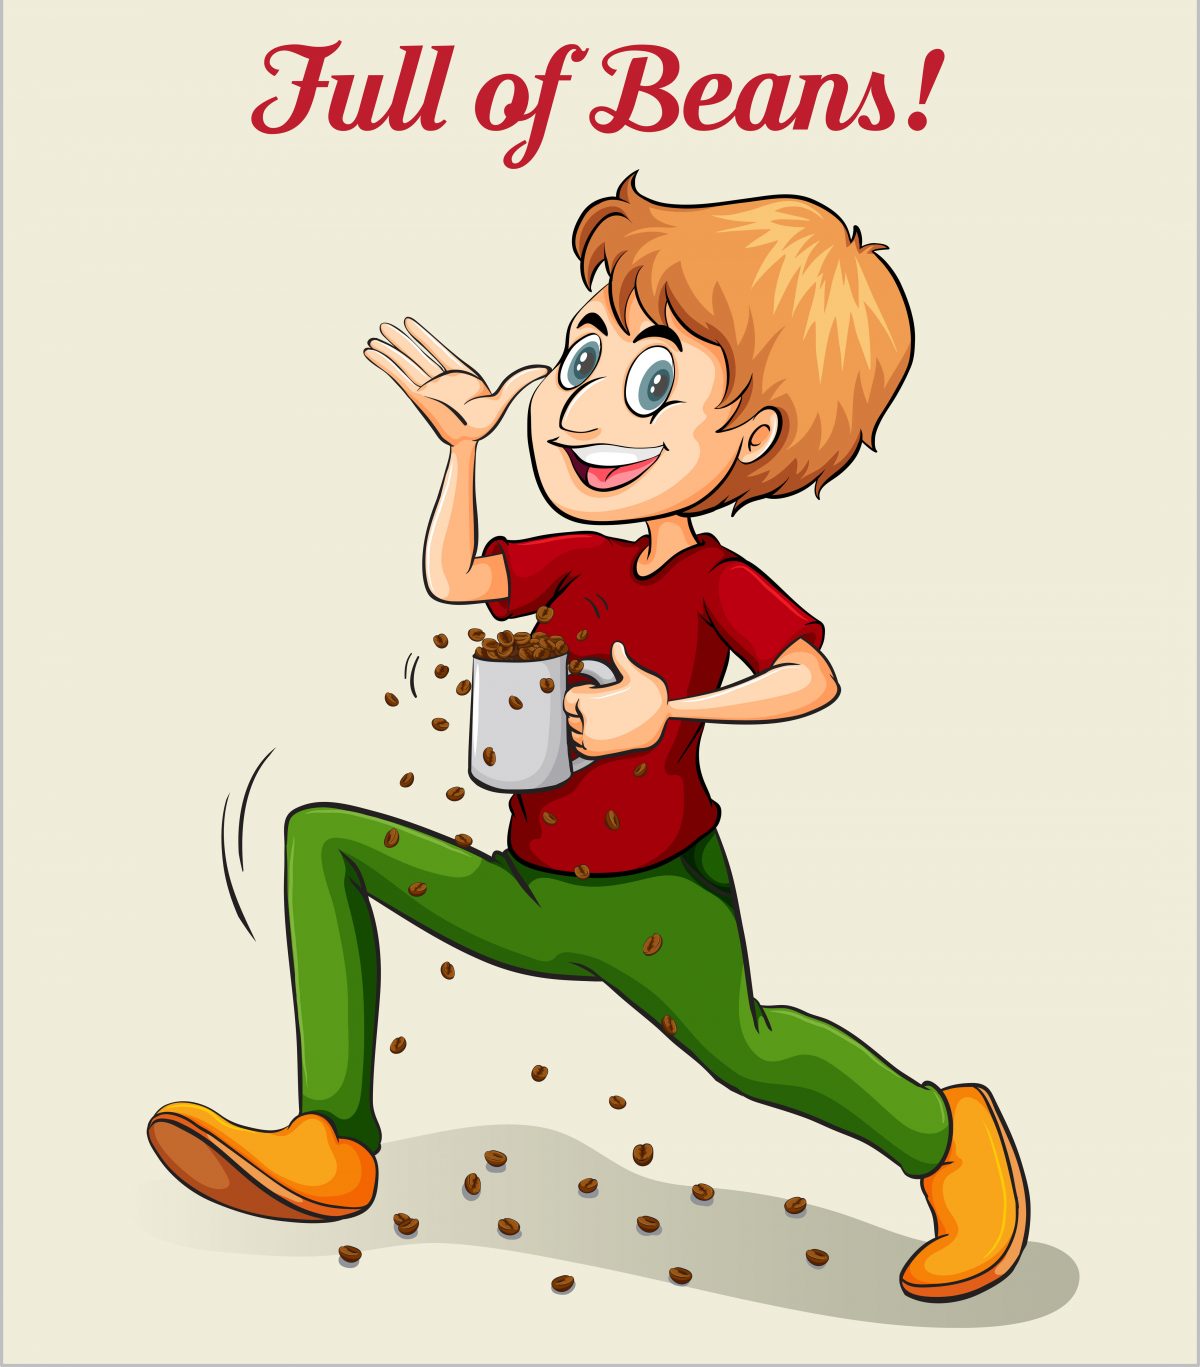 Full of beans